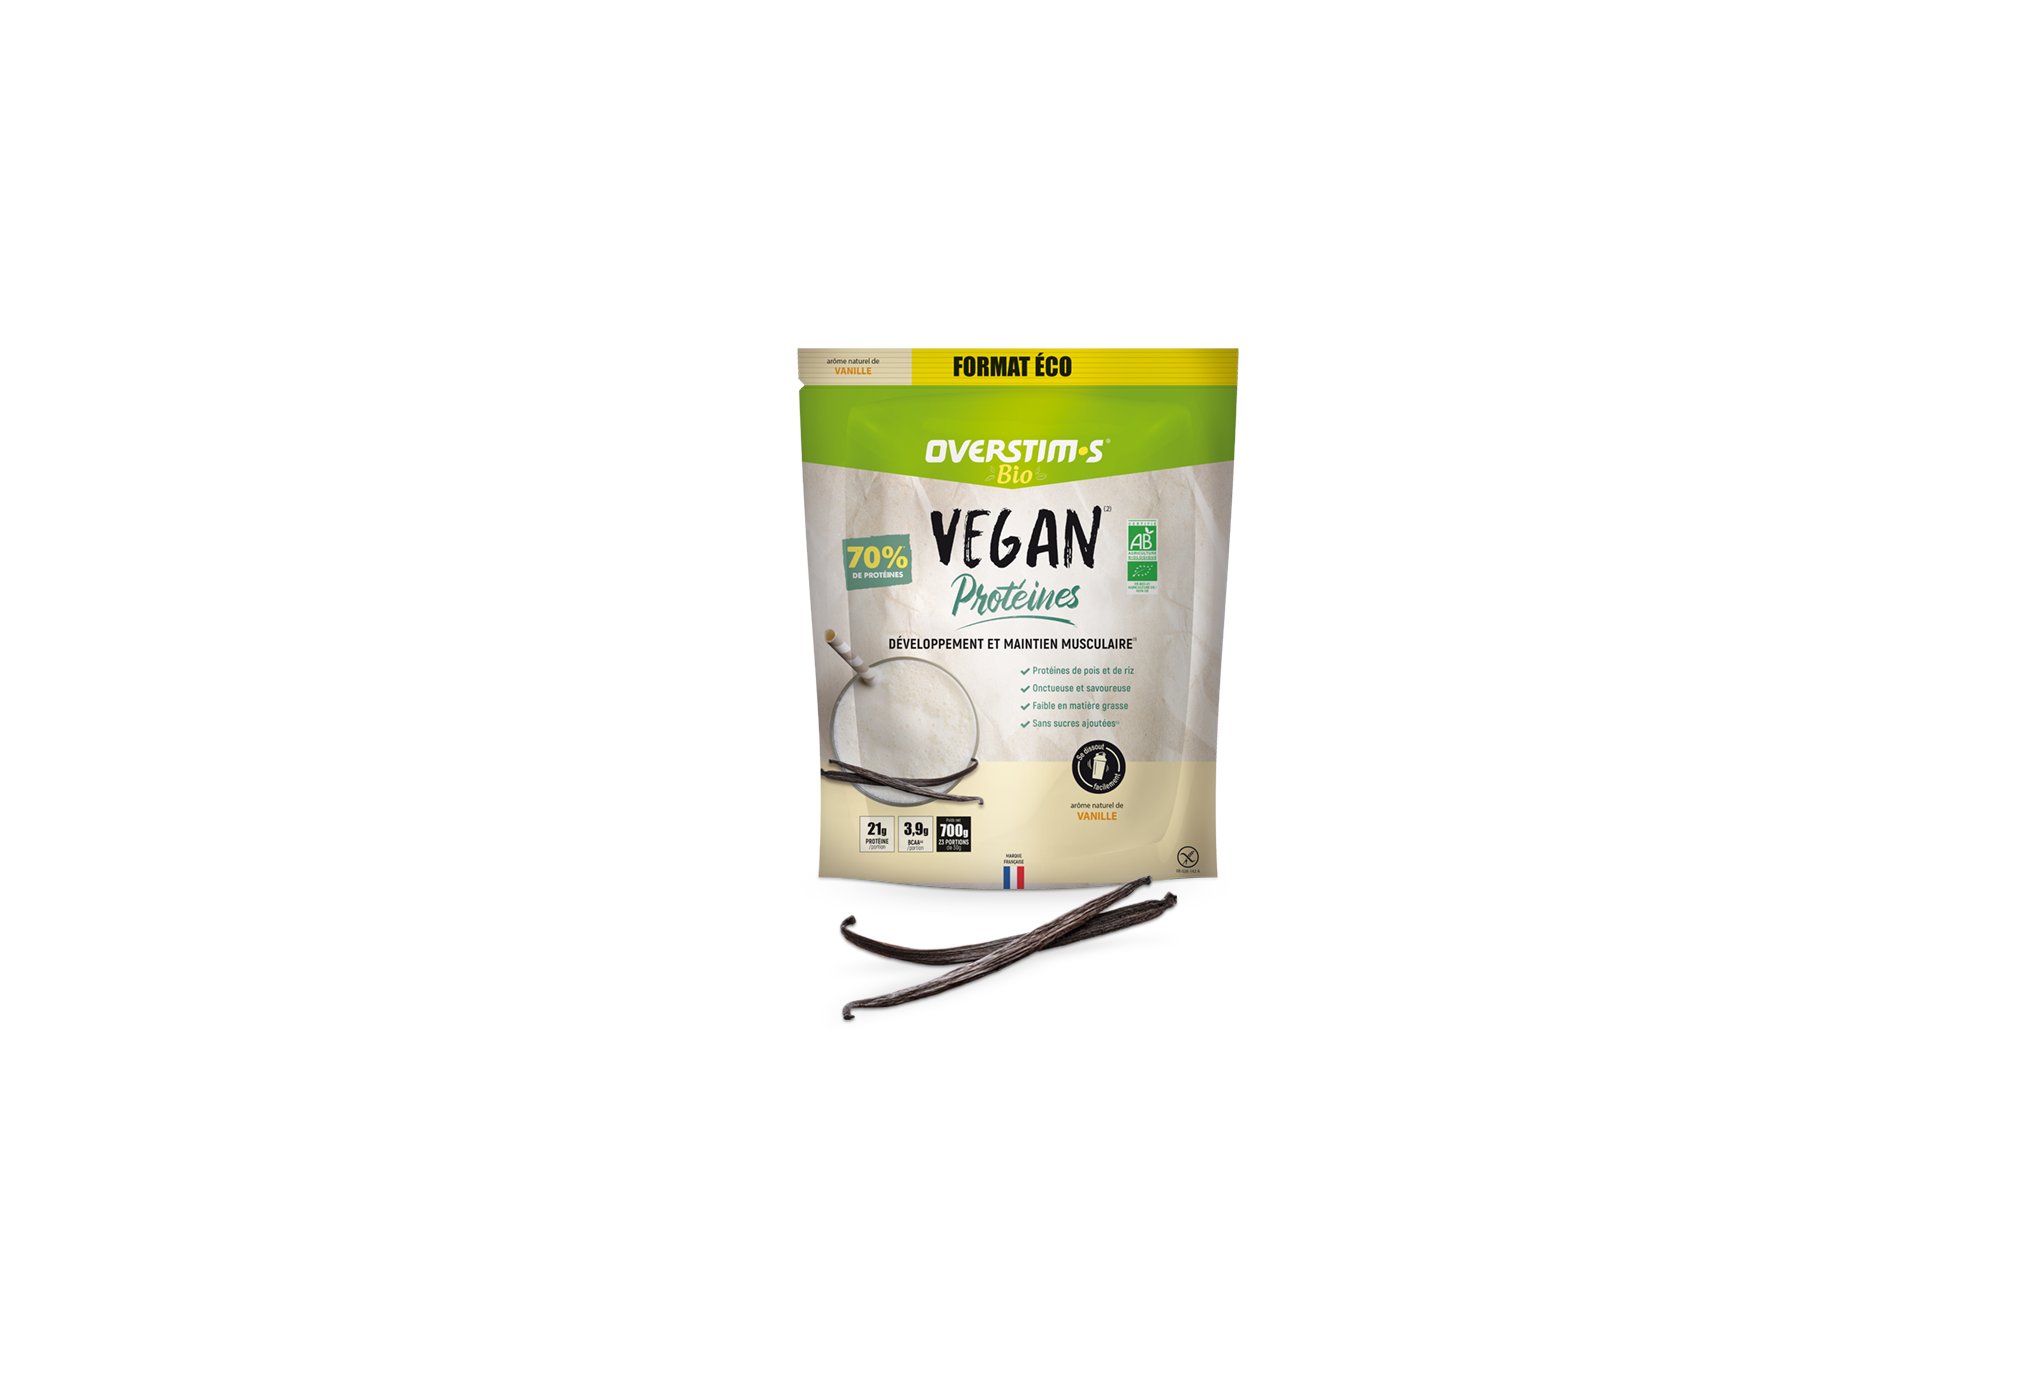 OVERSTIMS Vegan Protéines Bio 700 g - Vanille Diététique Protéines / récupération